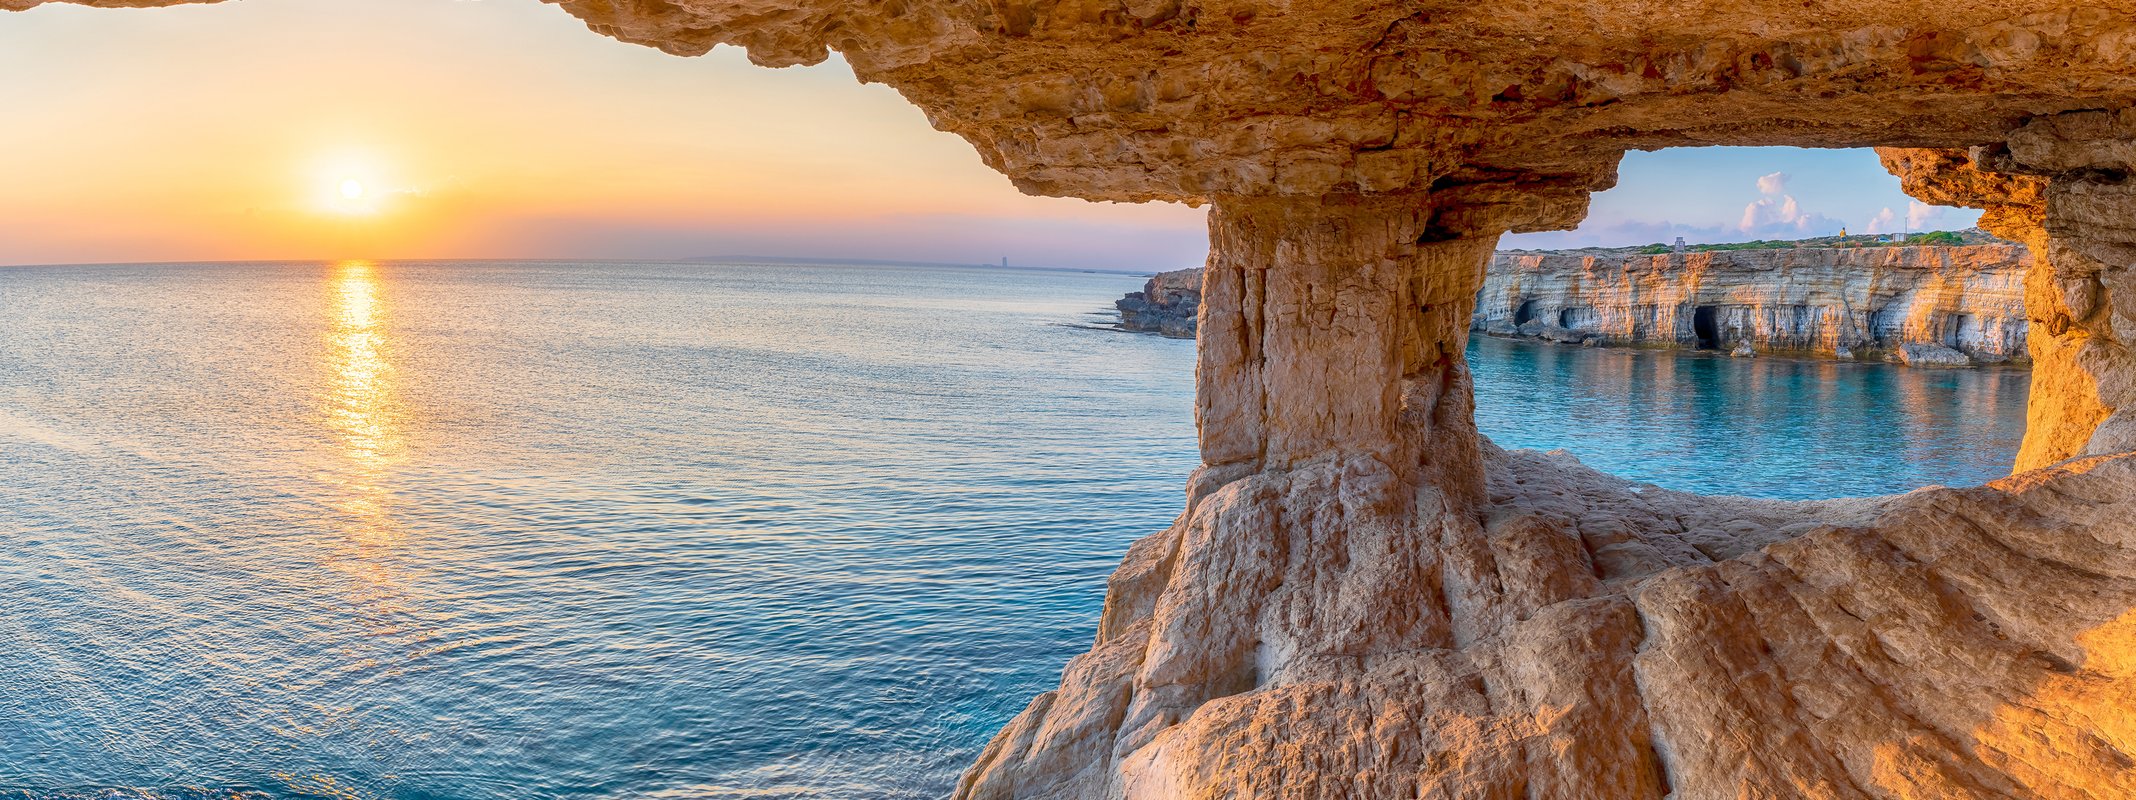 Η Κύπρος πρέπει να αξιολογήσει τον αντίκτυπο στις περιοχές Natura 2000